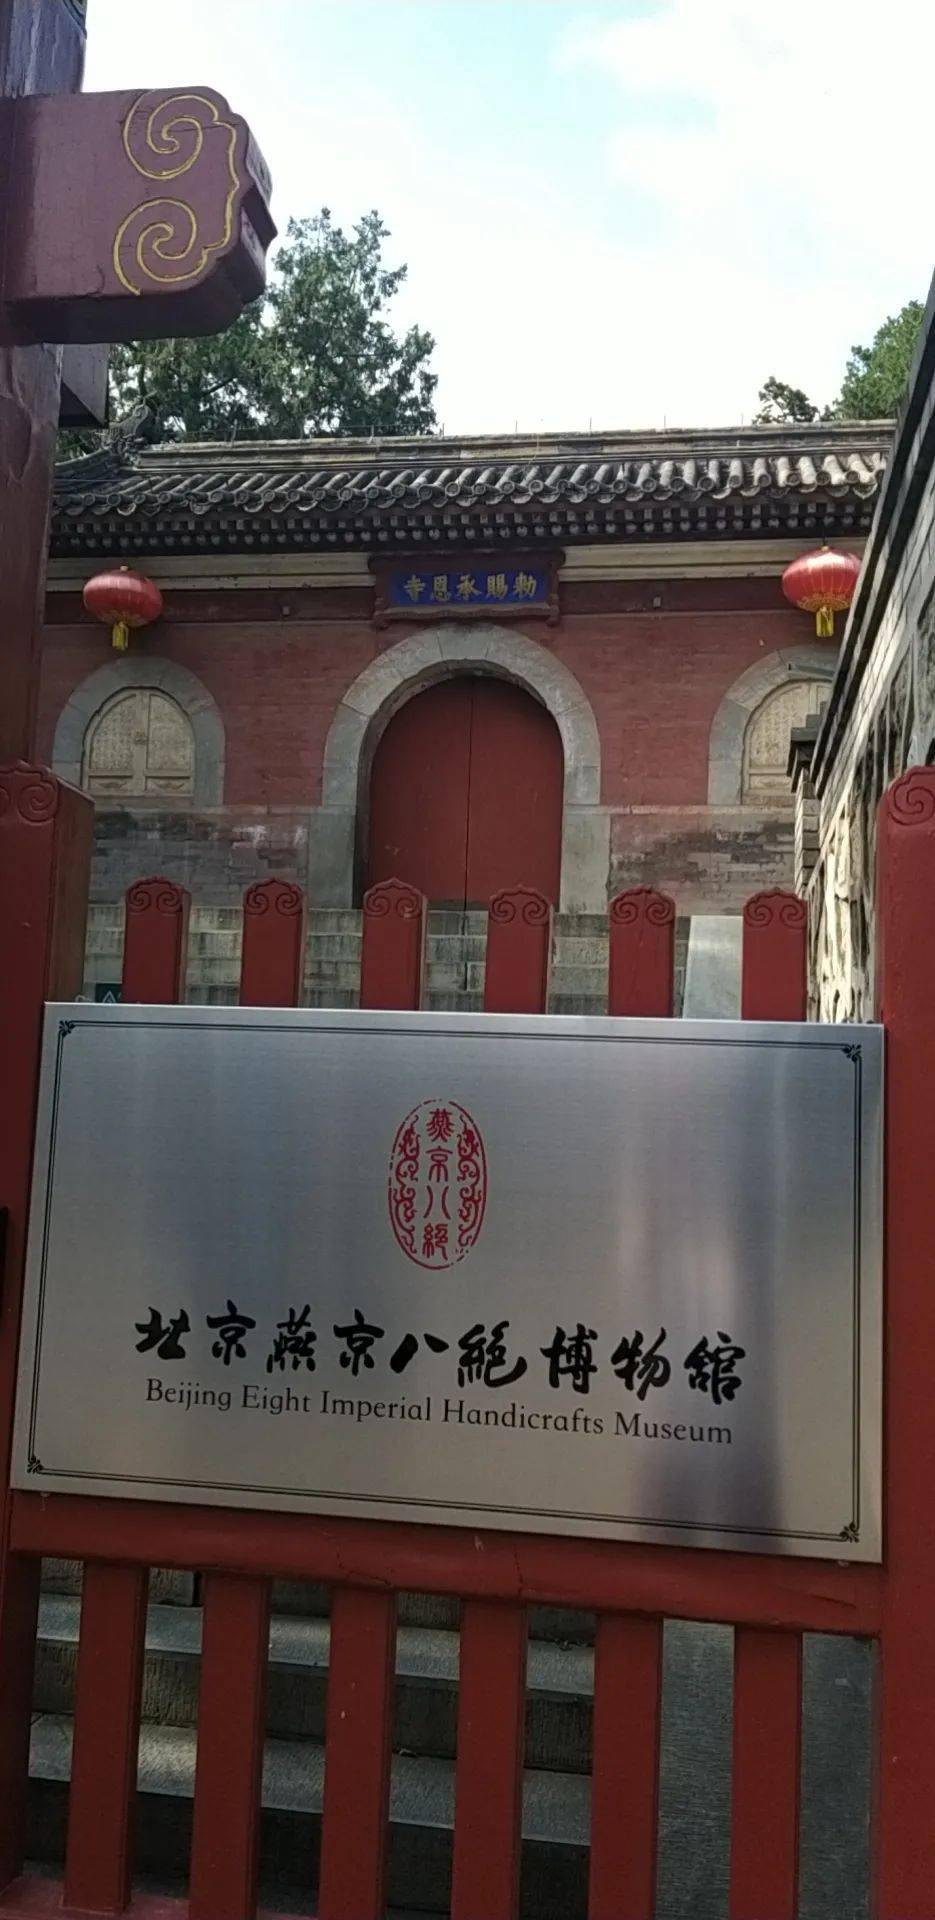 地处模式口承恩寺内北京燕京八绝博物馆正式开馆